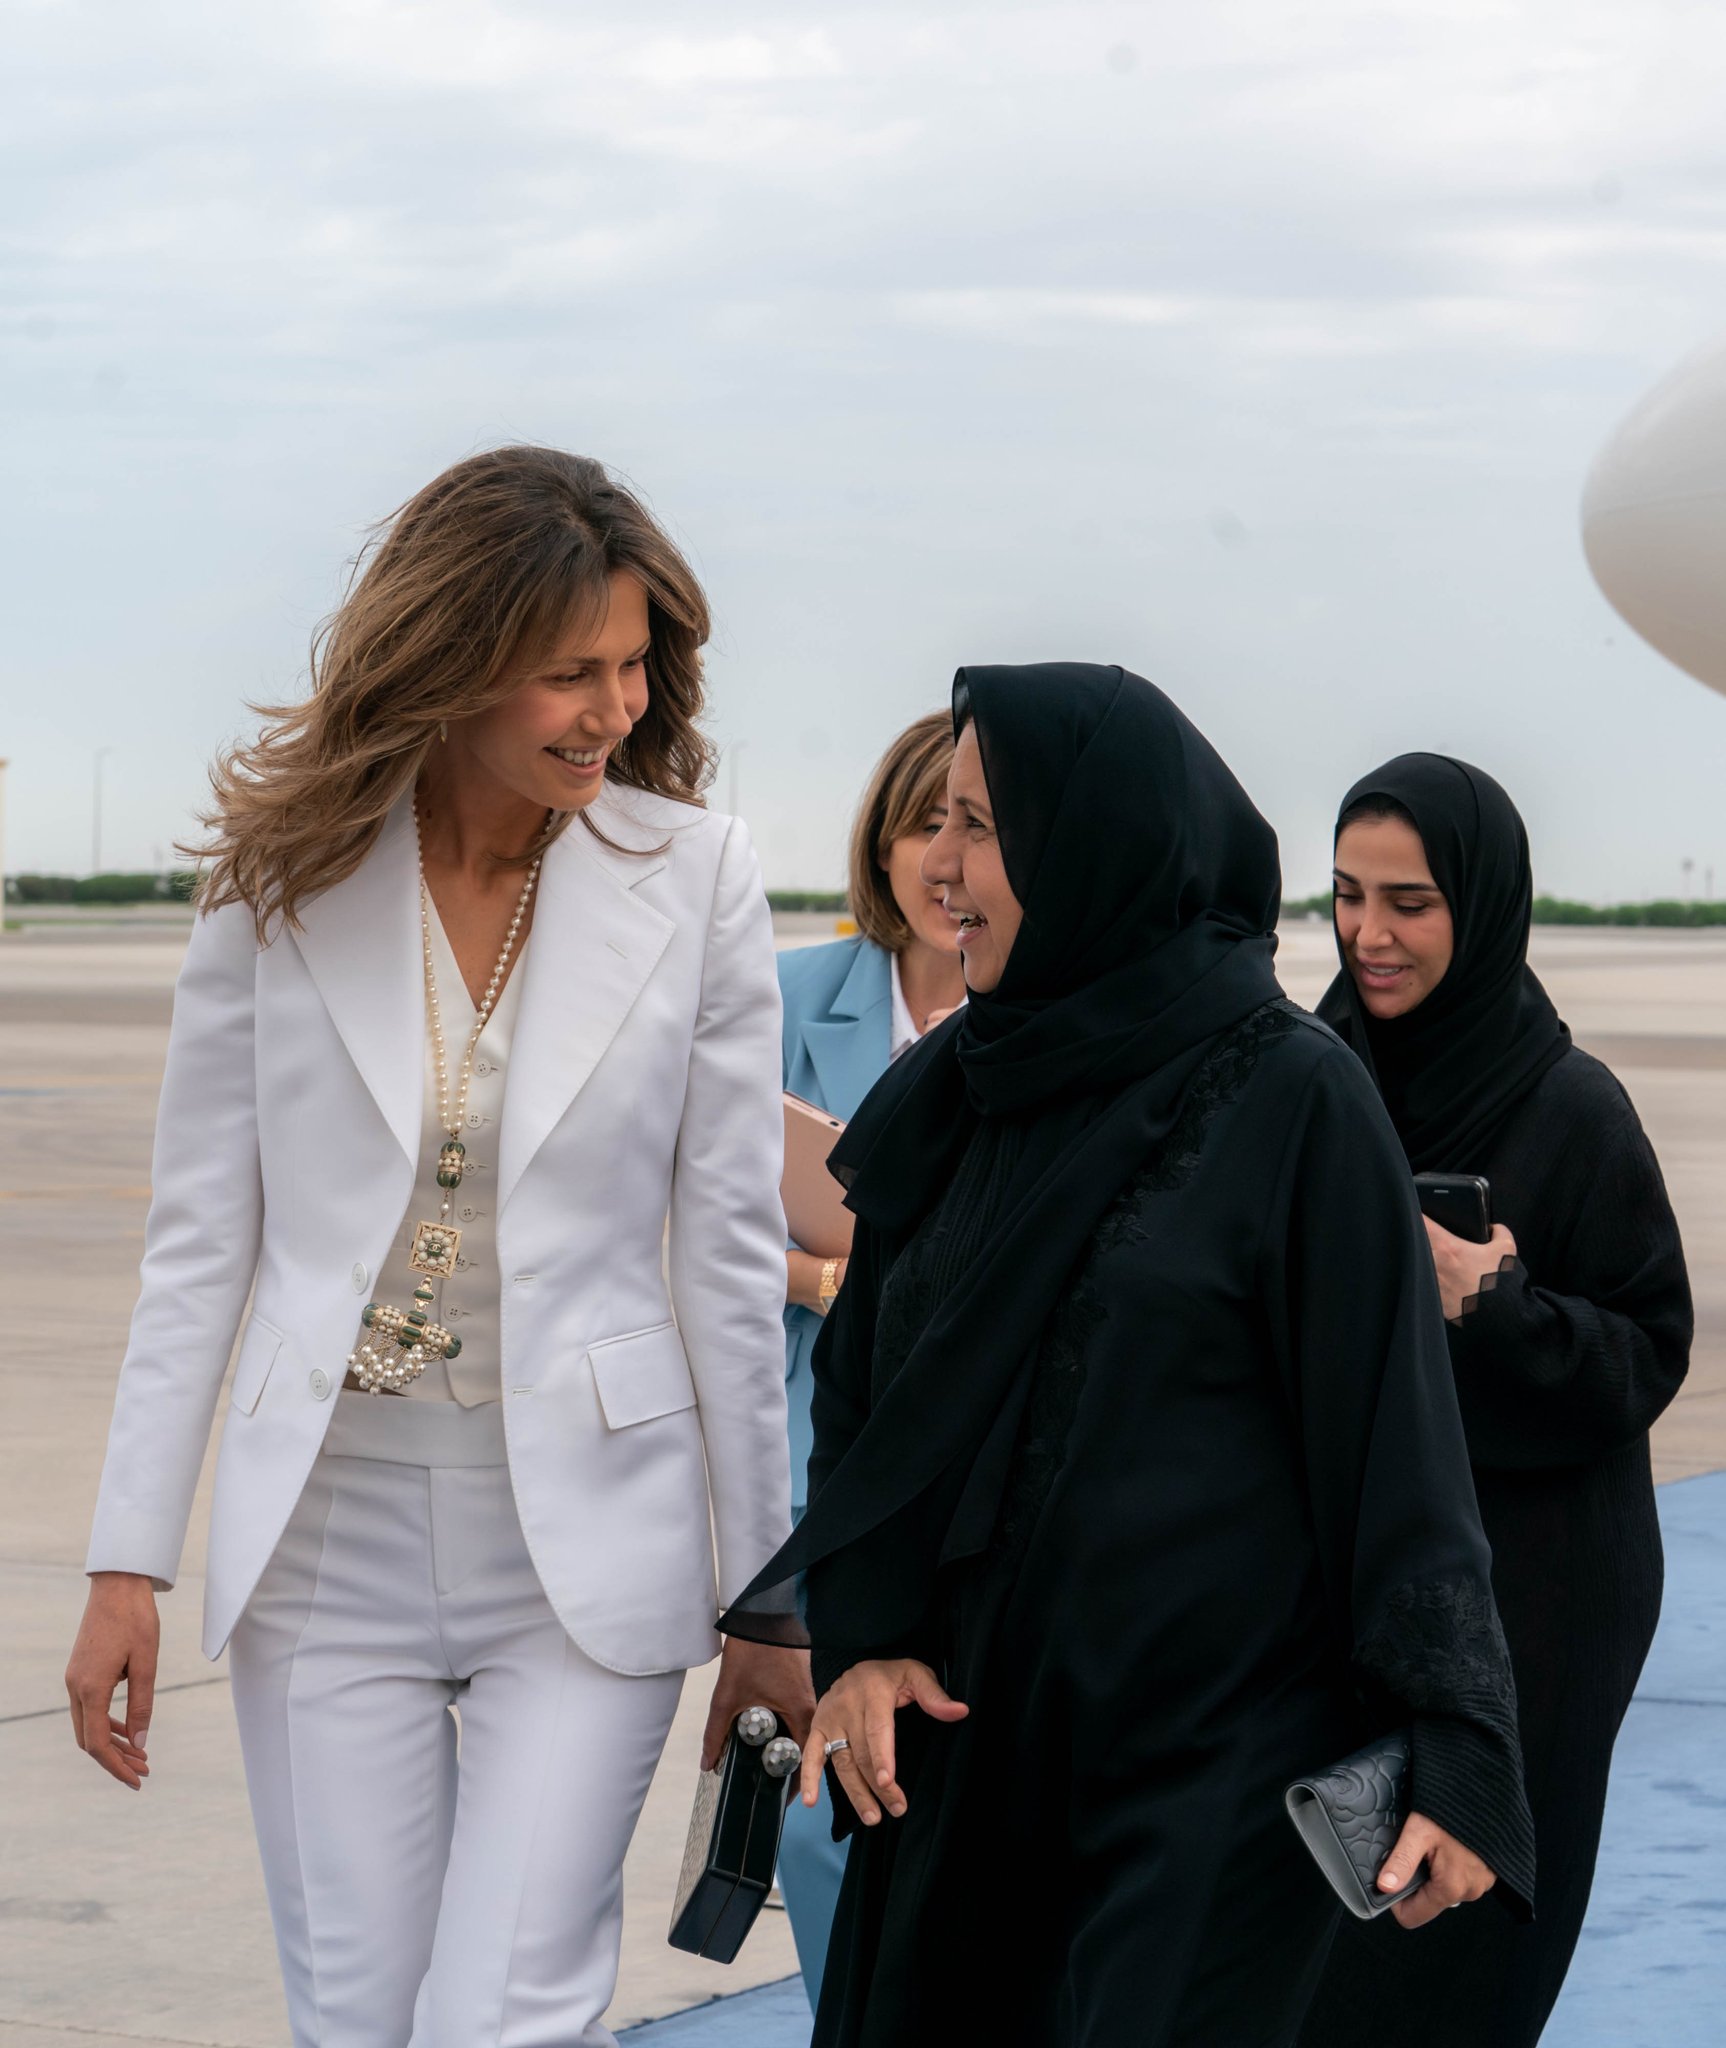 وصل السيد الرئيس بشار الأسد ظهر اليوم إلى دولة الإمارات العربية المتحدة في زيارة رسمية ترافقه خلالها السيدة الأولى أسماء الأسد